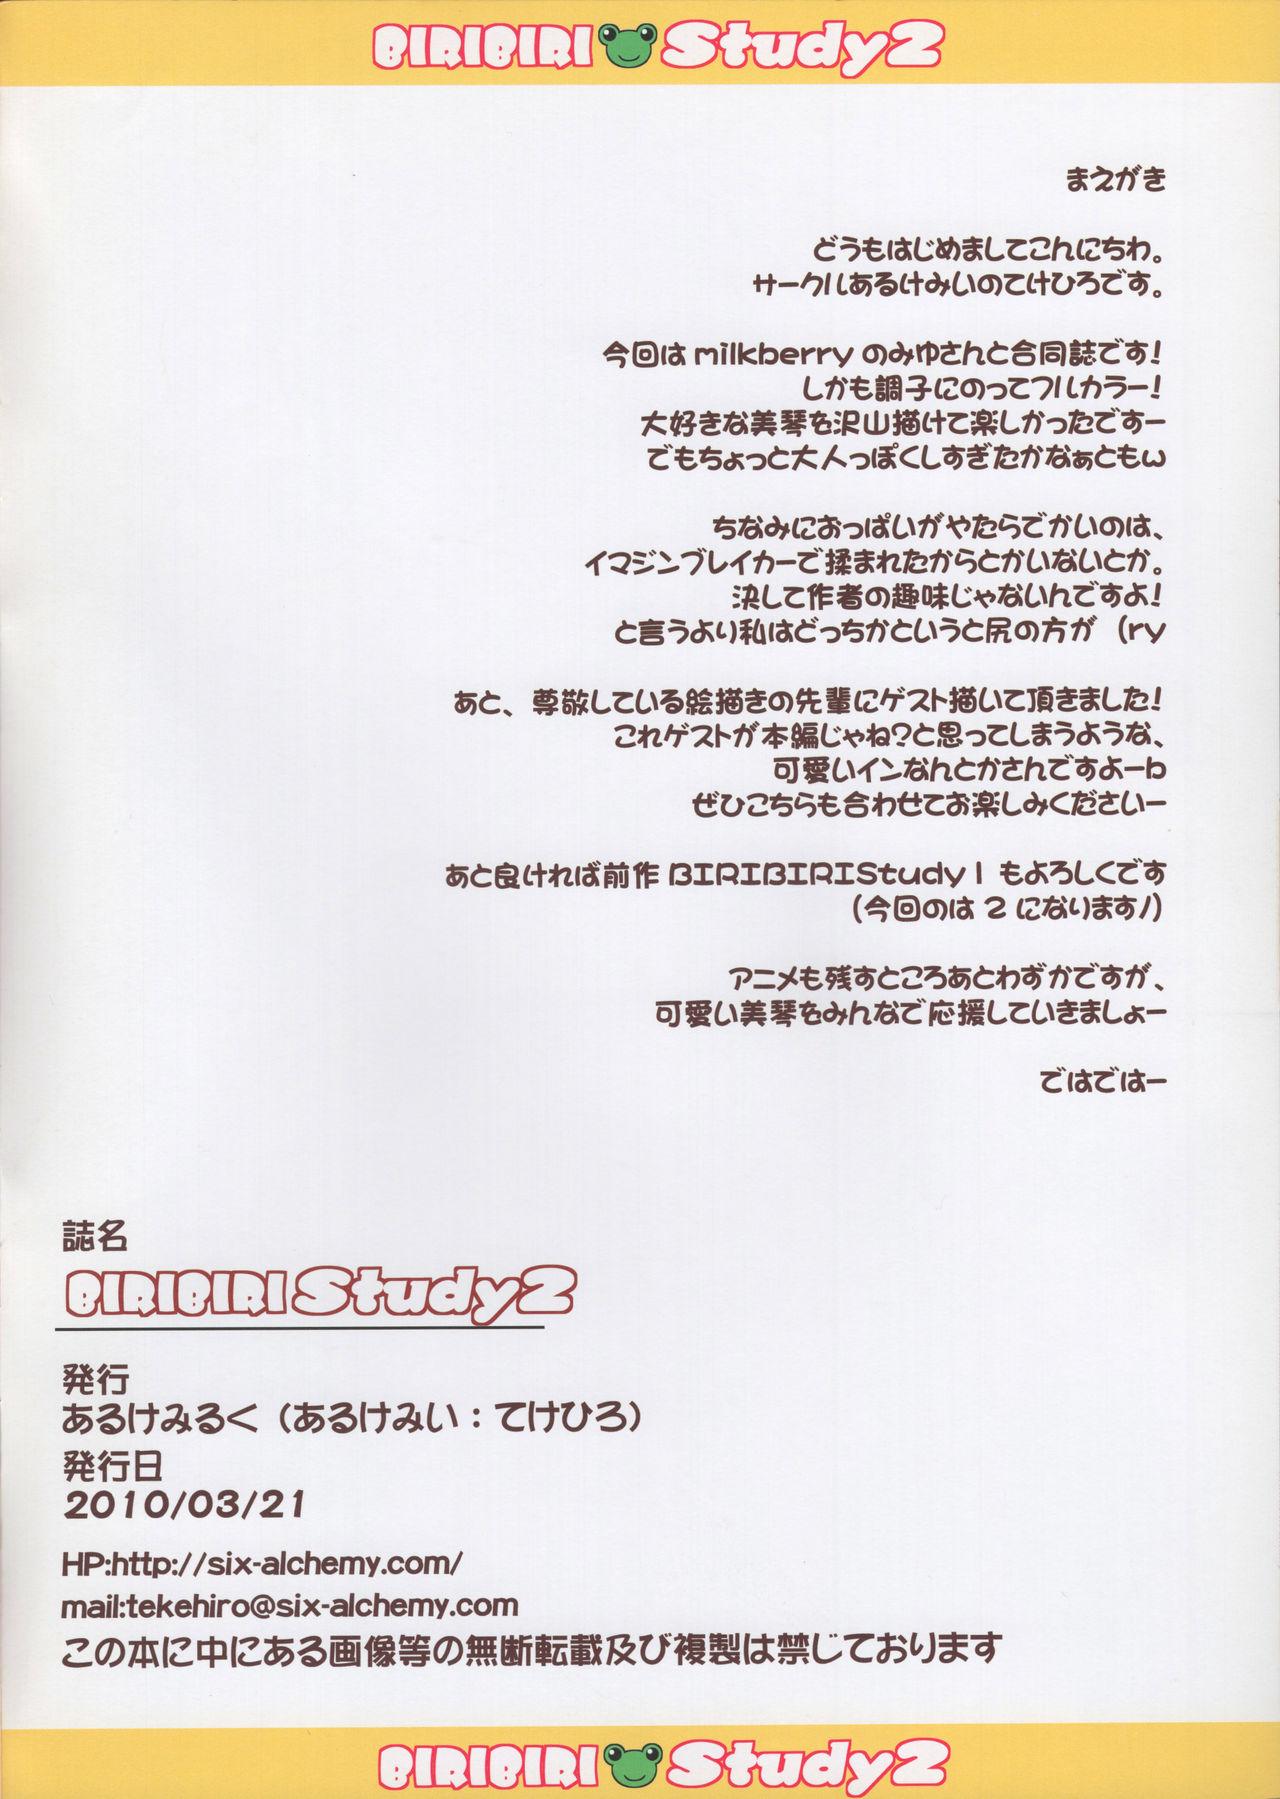 Black Thugs BiriBiri Study 2 + Uiharu Haru no Pantsu Matsuri - Toaru kagaku no railgun | a certain scientific railgun Chile - Page 2